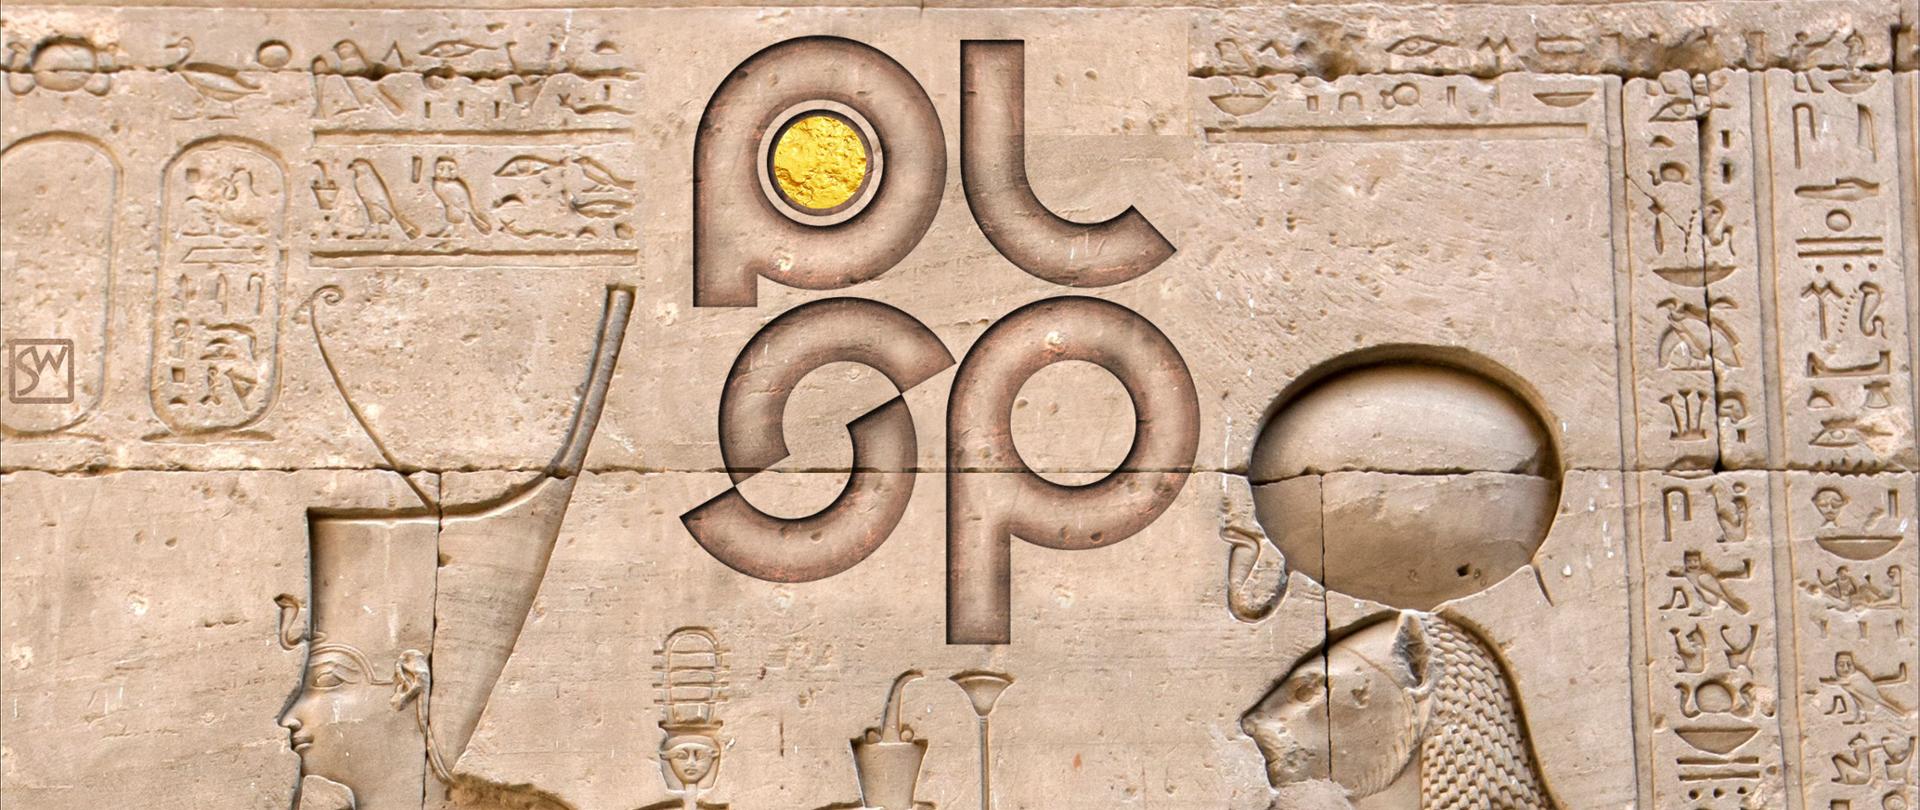 plakat przedstawiający egipskie płaskorzeźby oraz stylizowane na płaskorzeźbę logo PLSP, w dolanej części napis Dzień Egiptu, data 30 listopada 2022 oraz adres Smocza 6